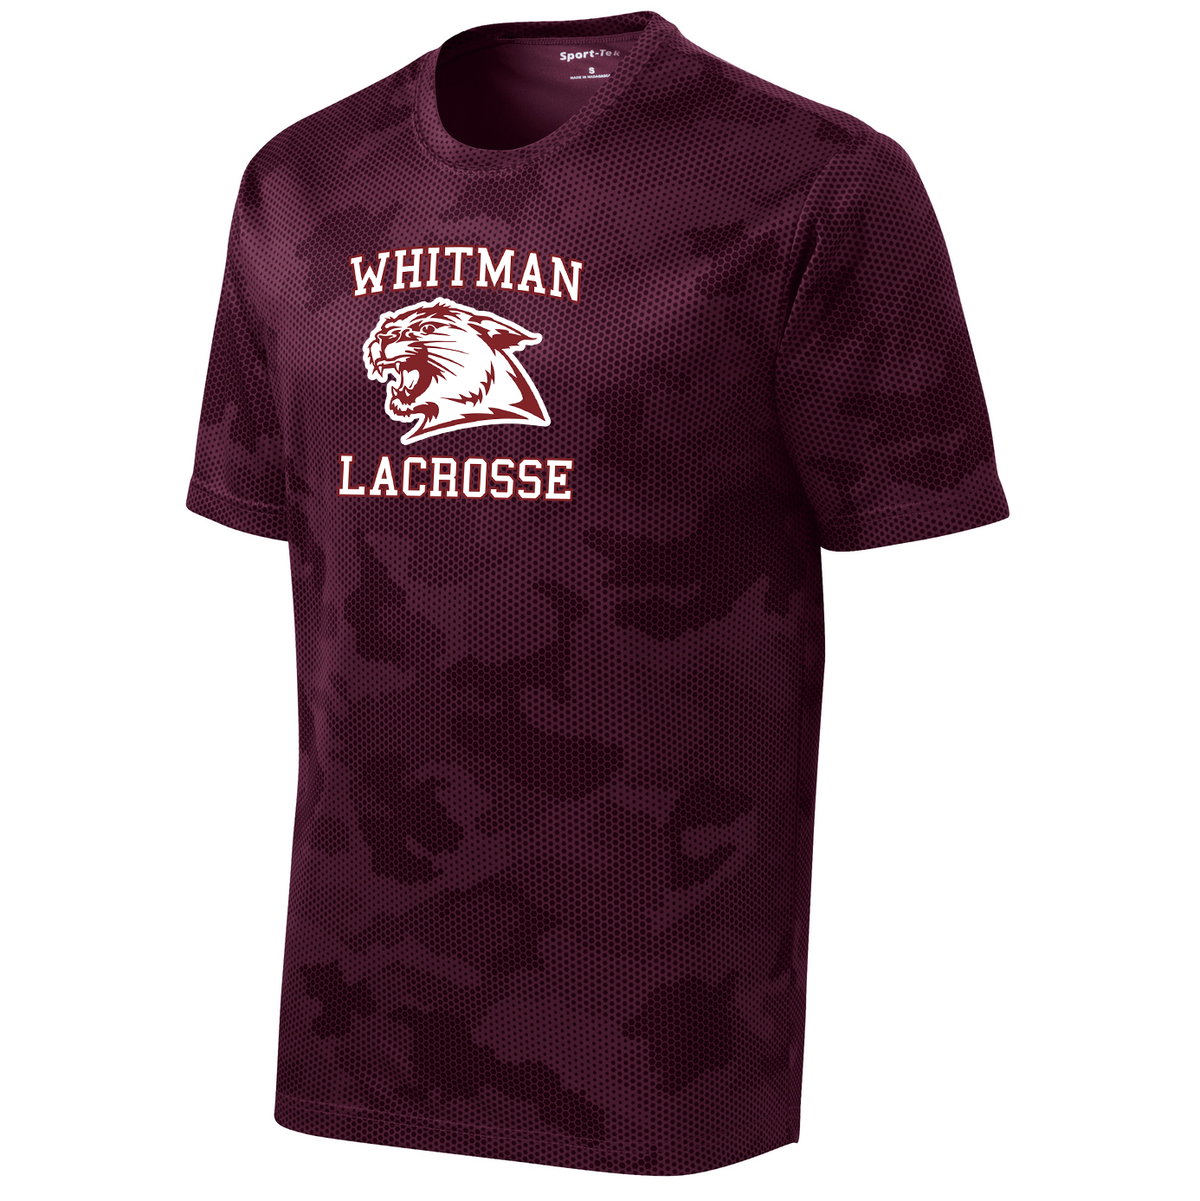 Whitman Lacrosse CamoHex Tee